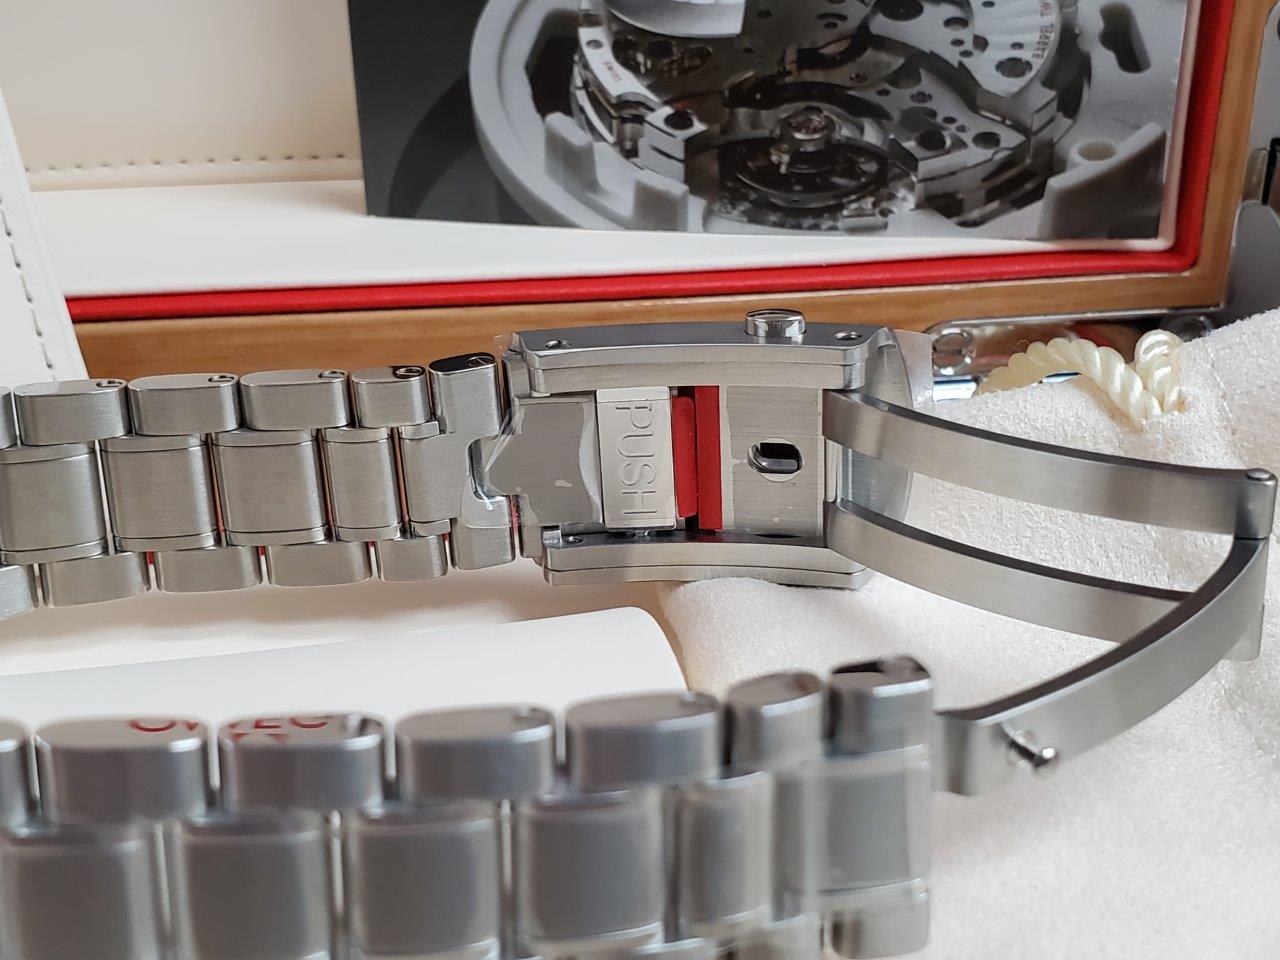 Omega SpeedMaster Racing White Tin-Tin Co Axial Chronometer 32930445104001 NEW